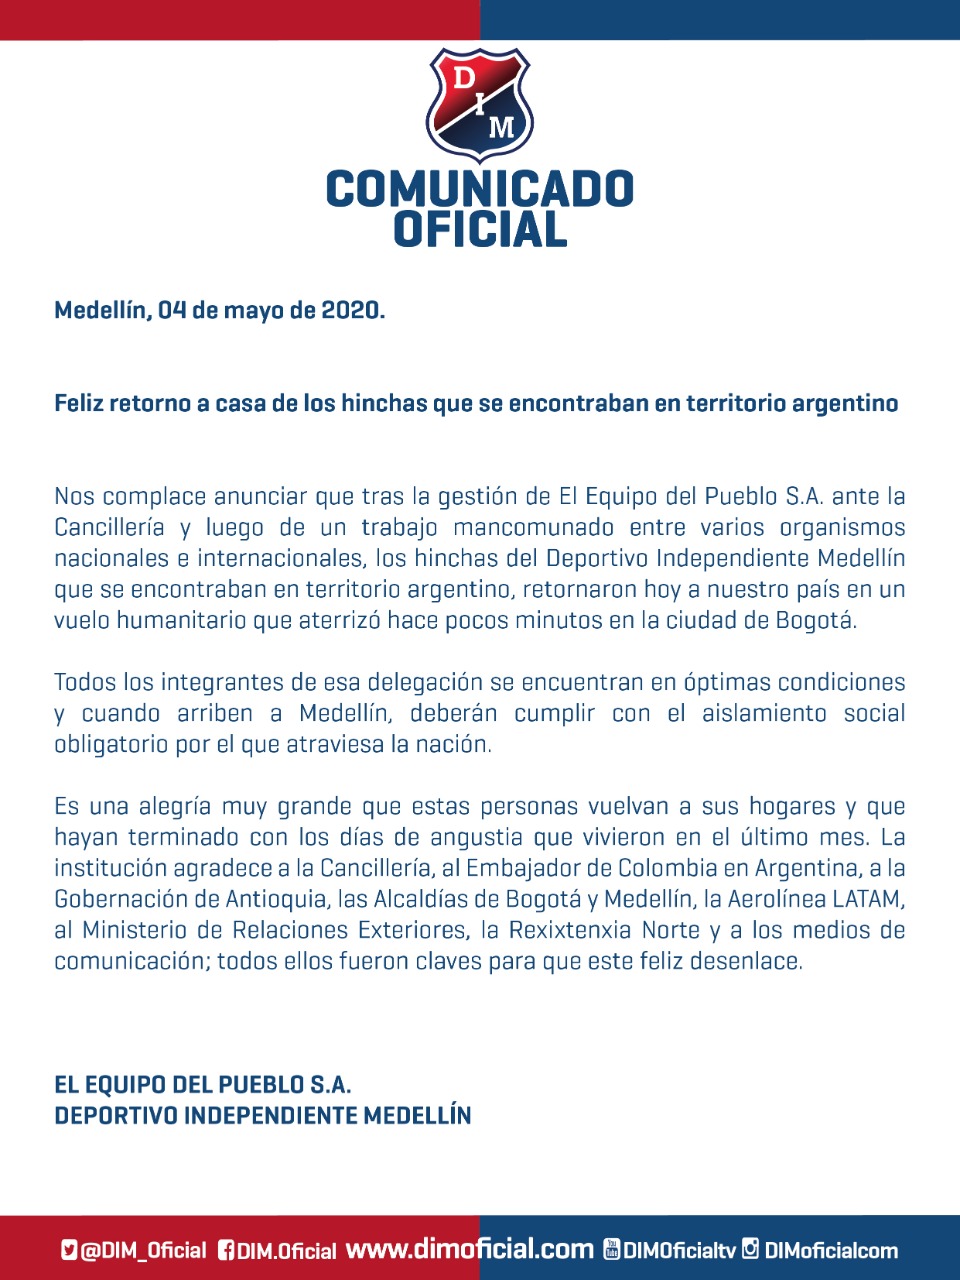 Comunicado oficial Independiente Medellín, 4 de mayo de 2020